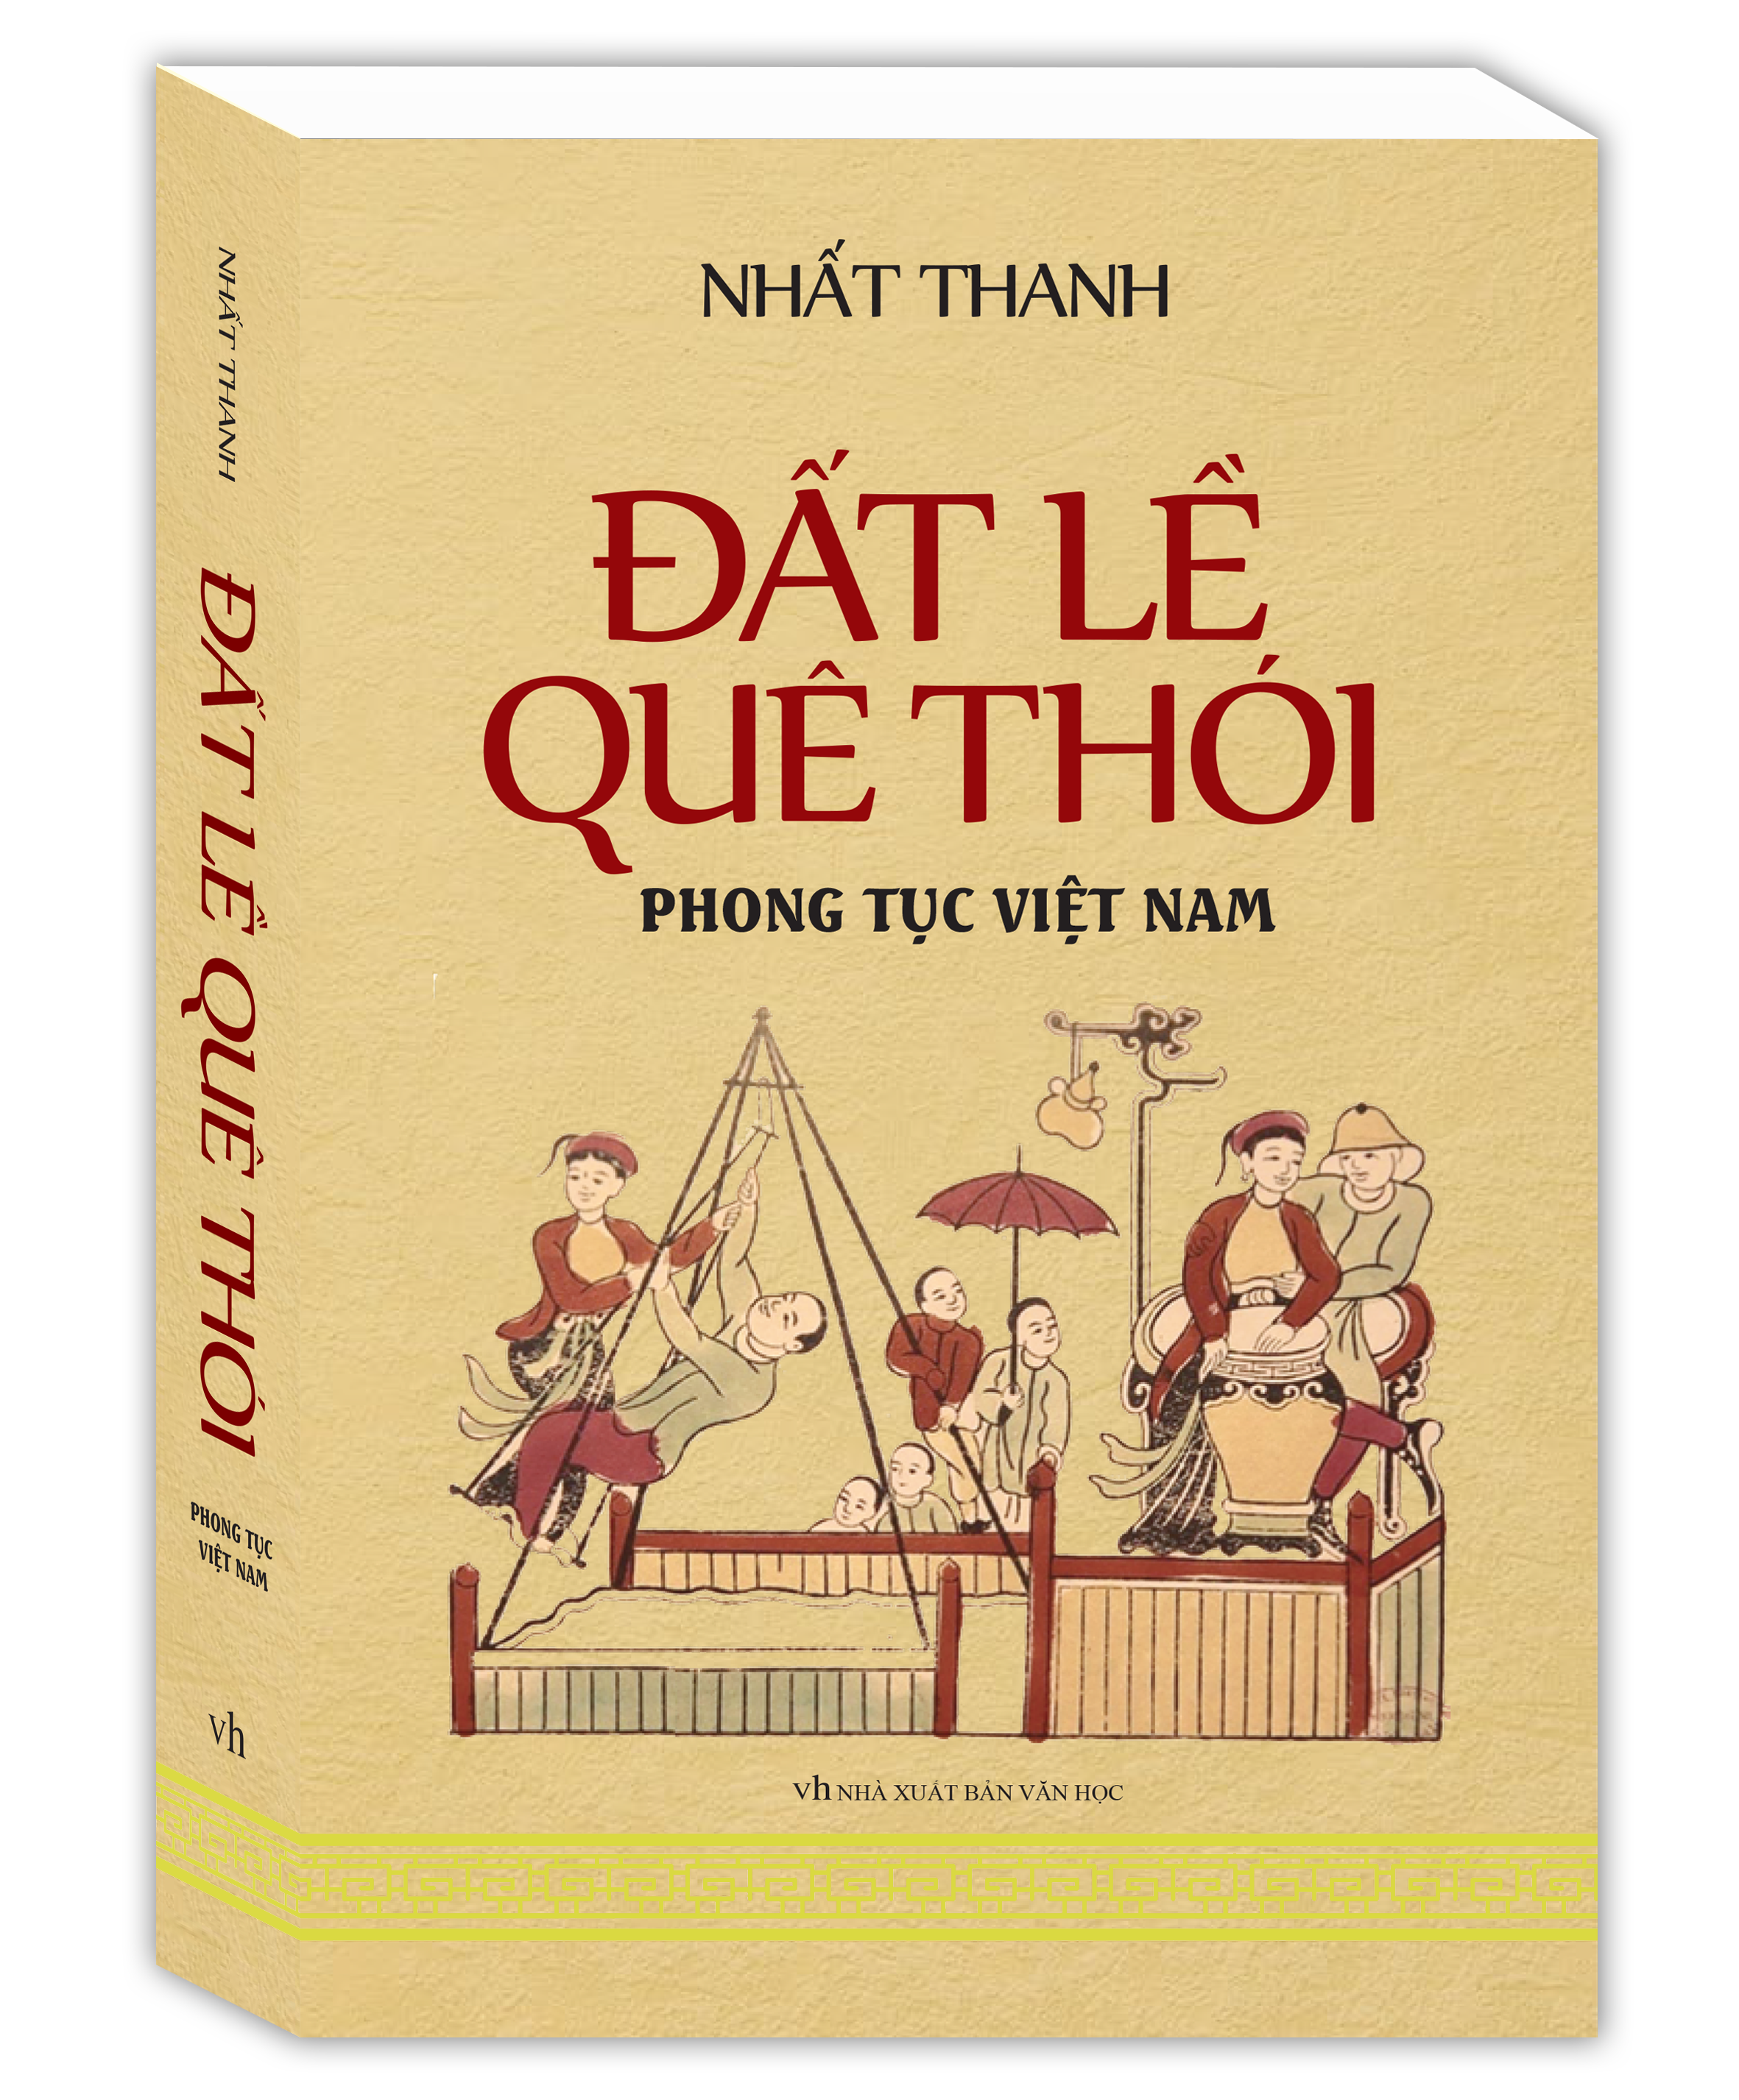 Review sách Đất Lề Quê Thói – Phong Tục Việt Nam